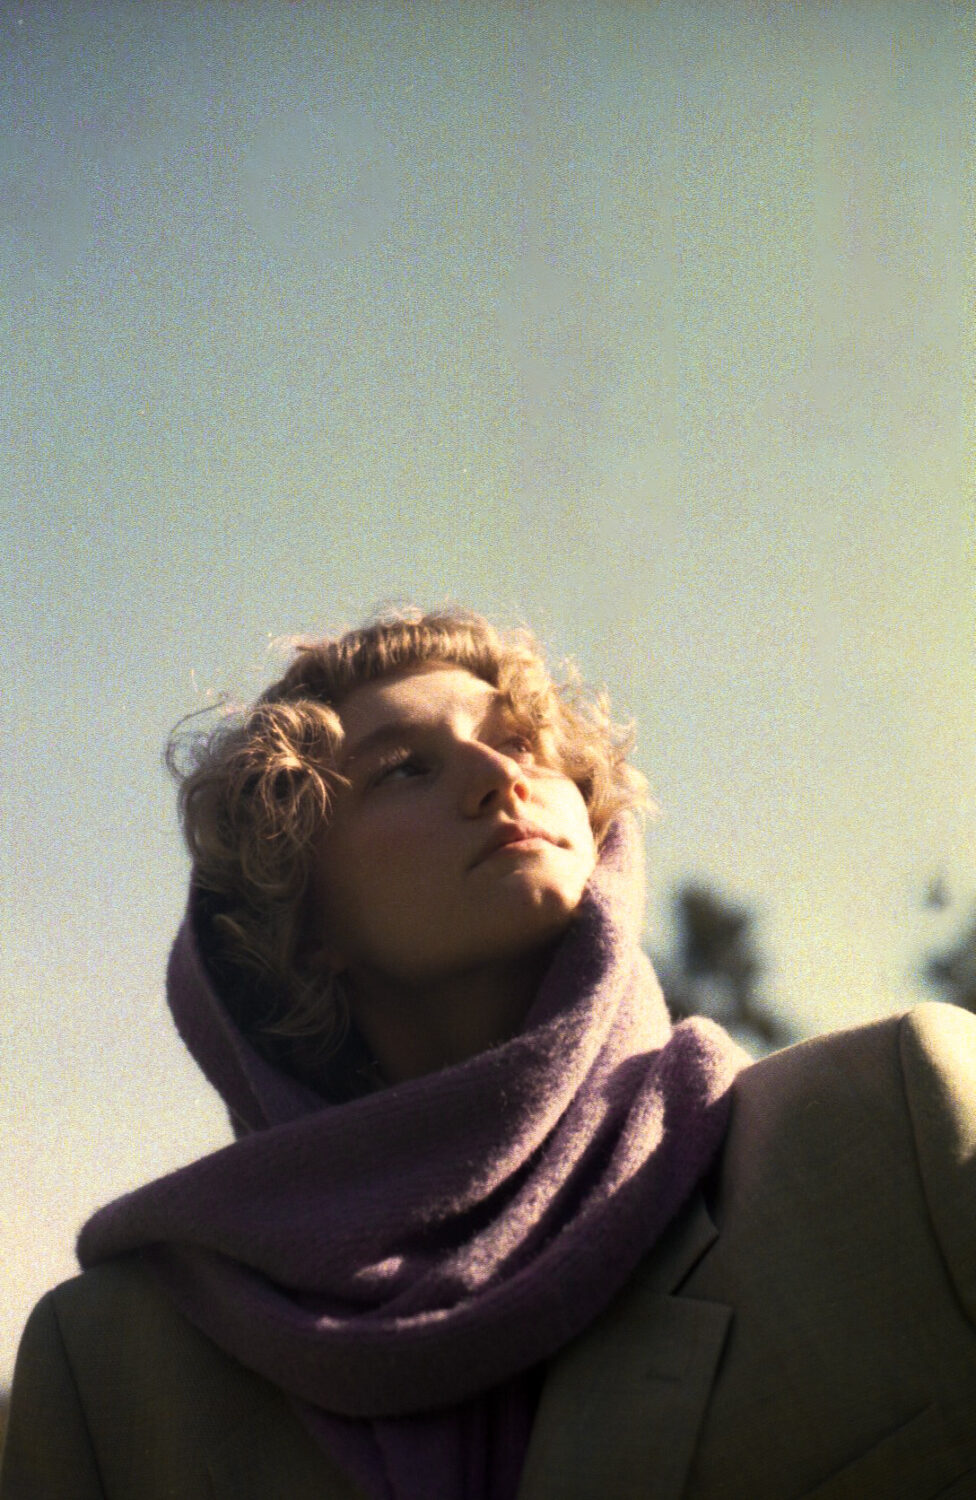 Ein Bild von einer Frau, die einen lila Schal trägt.